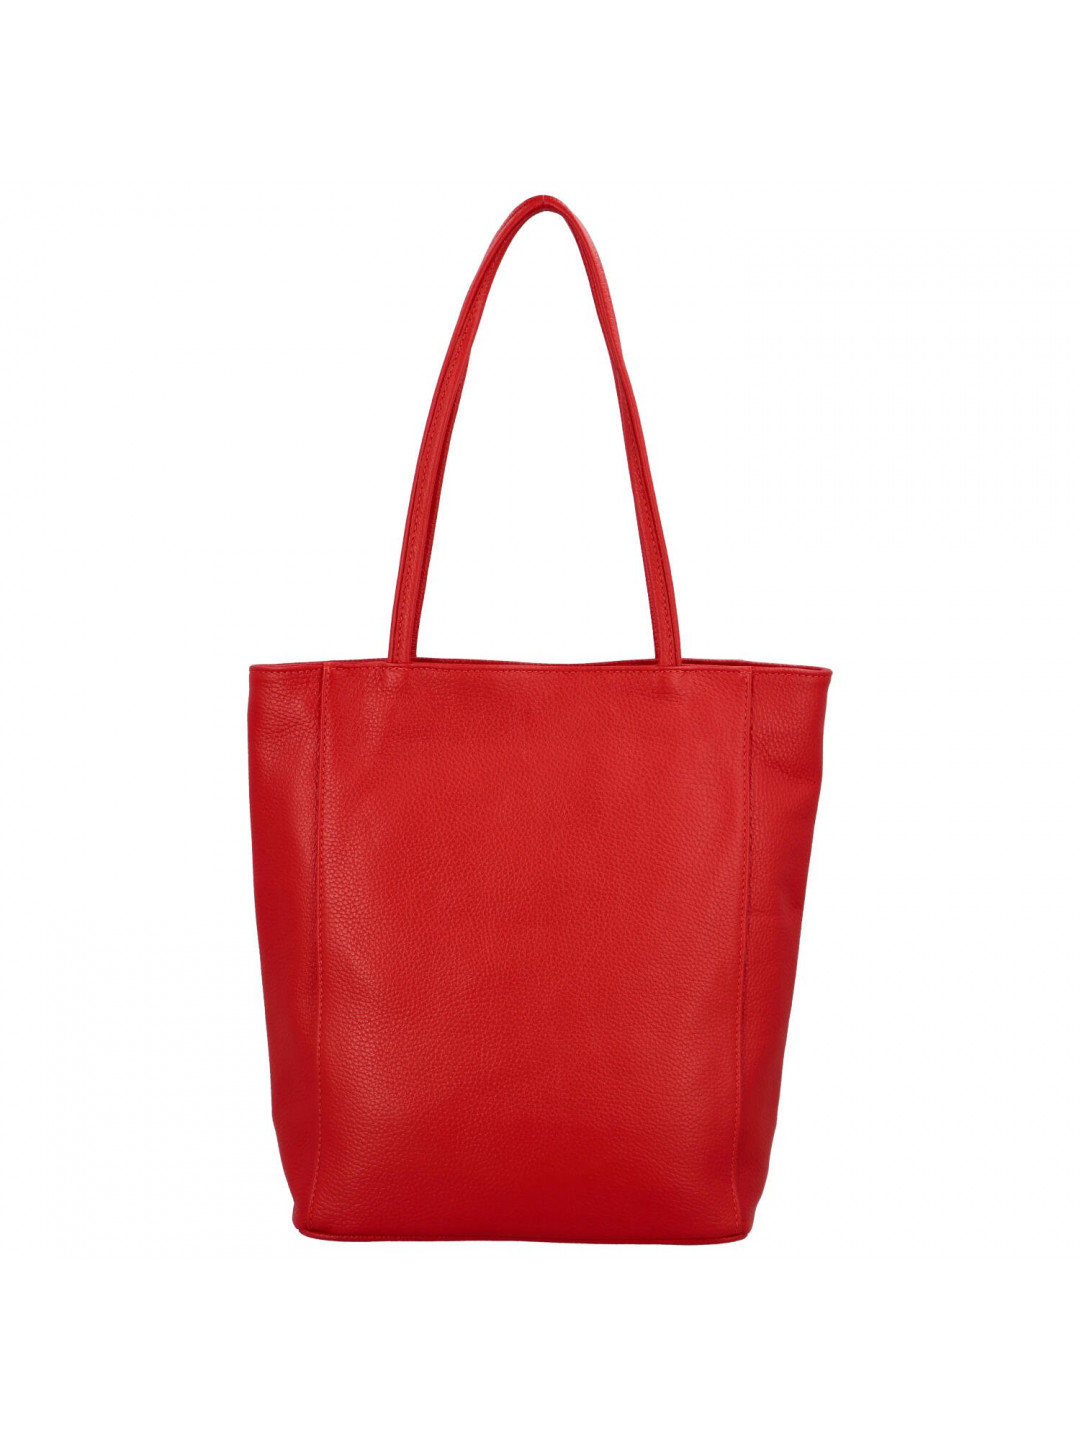 Luxusní dámská kožená kabelka Jane výrazná červená